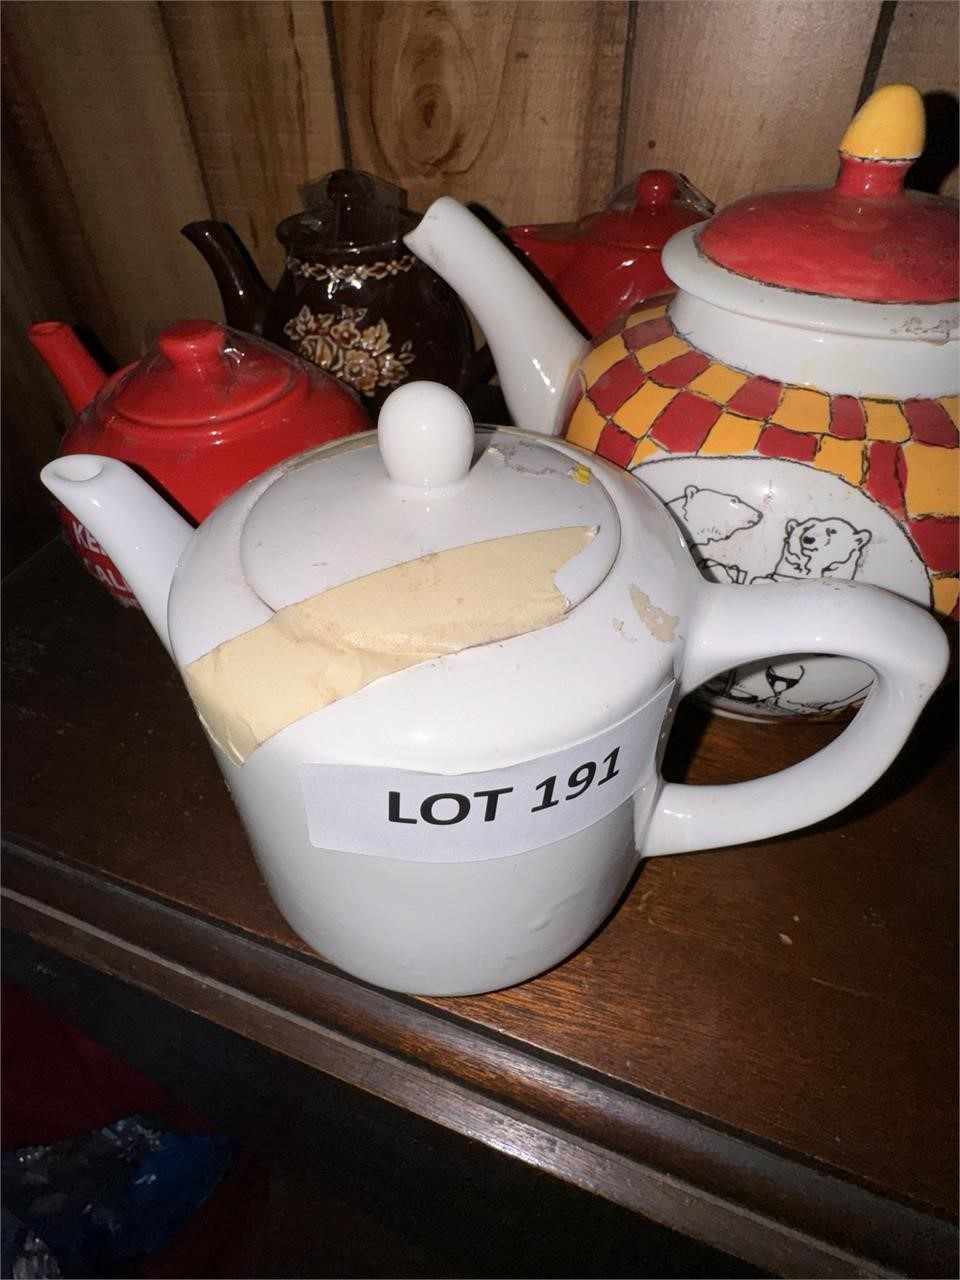 Miscellaneous teapots